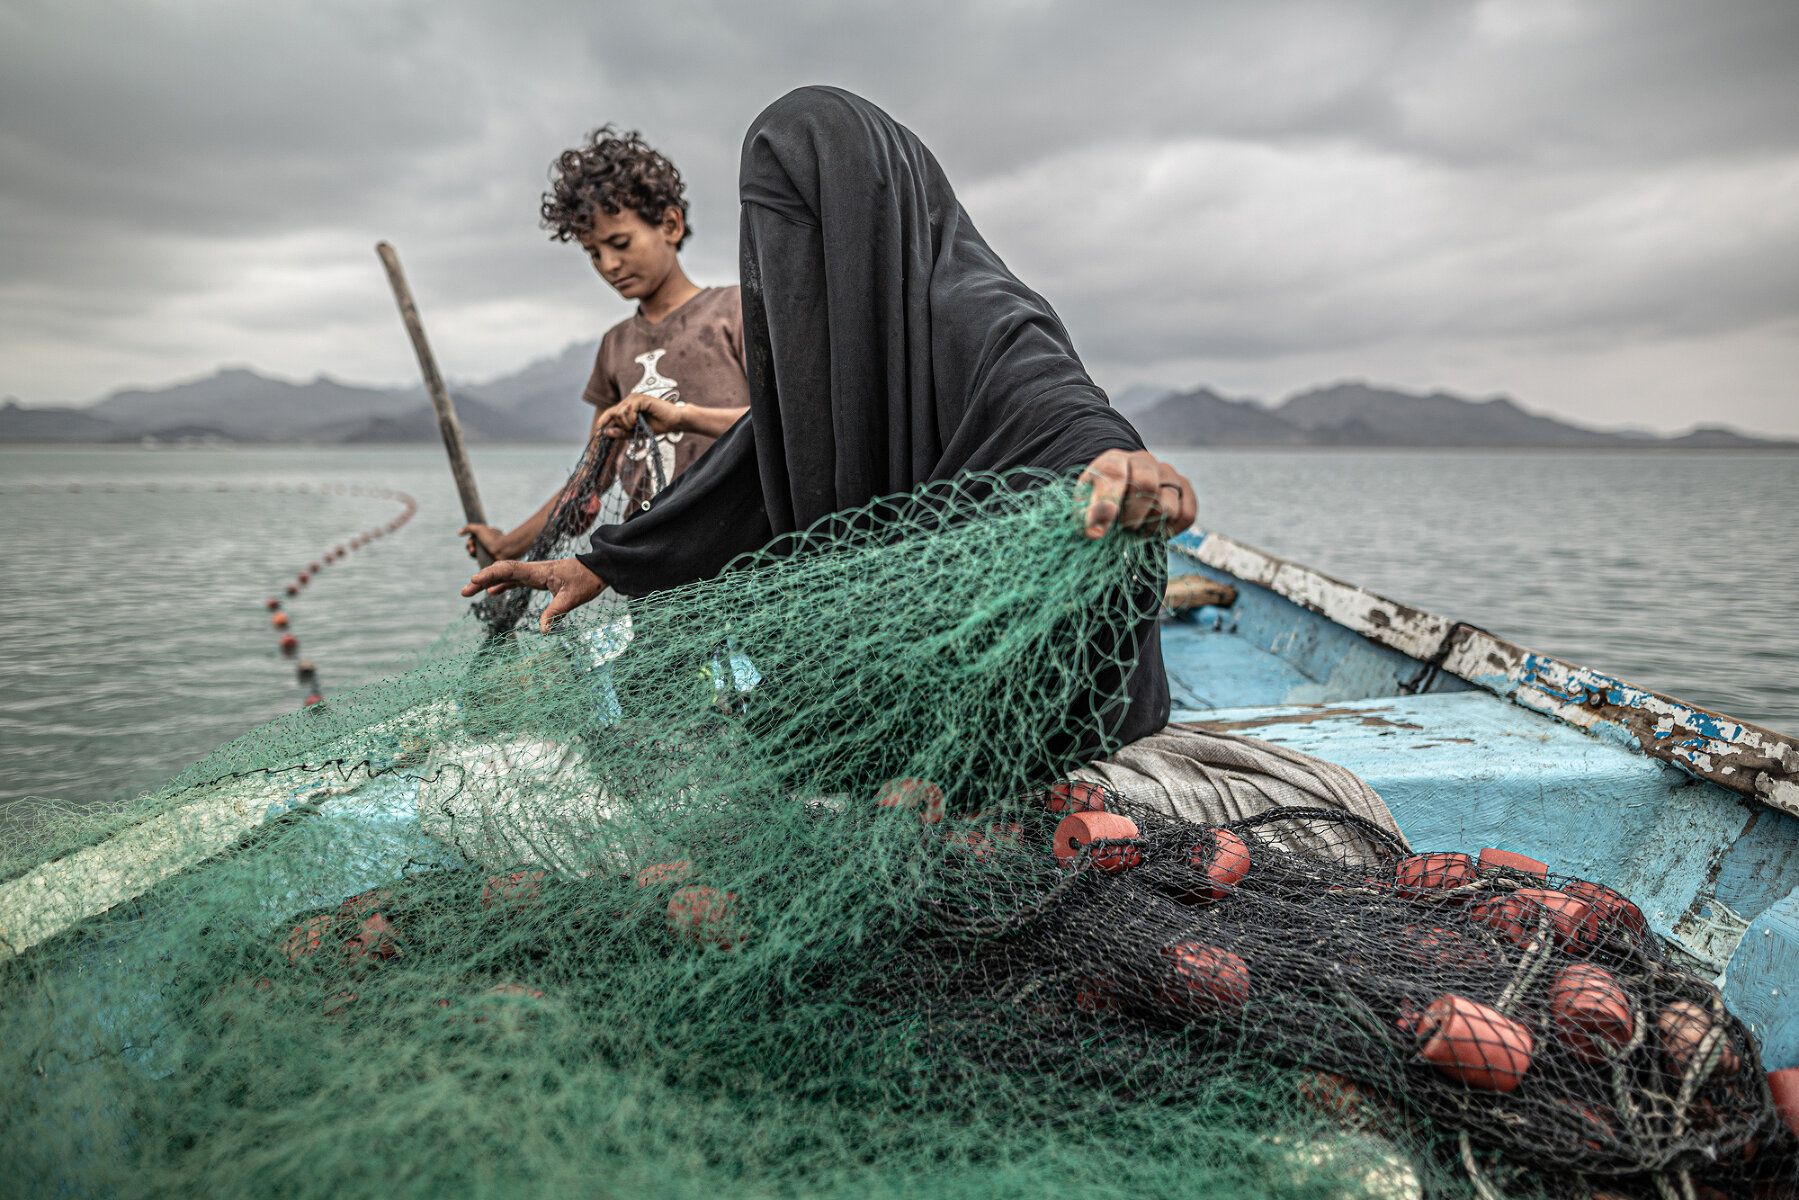 Yemen: Hunger, Another War Wound. <p>Номинация &laquo;Лучший снимок&raquo; в категории &laquo;Проблемы современности&raquo;. Женщина с сыном разворачивают рыболовную сеть в одном из заливов на побережье Йемена</p>